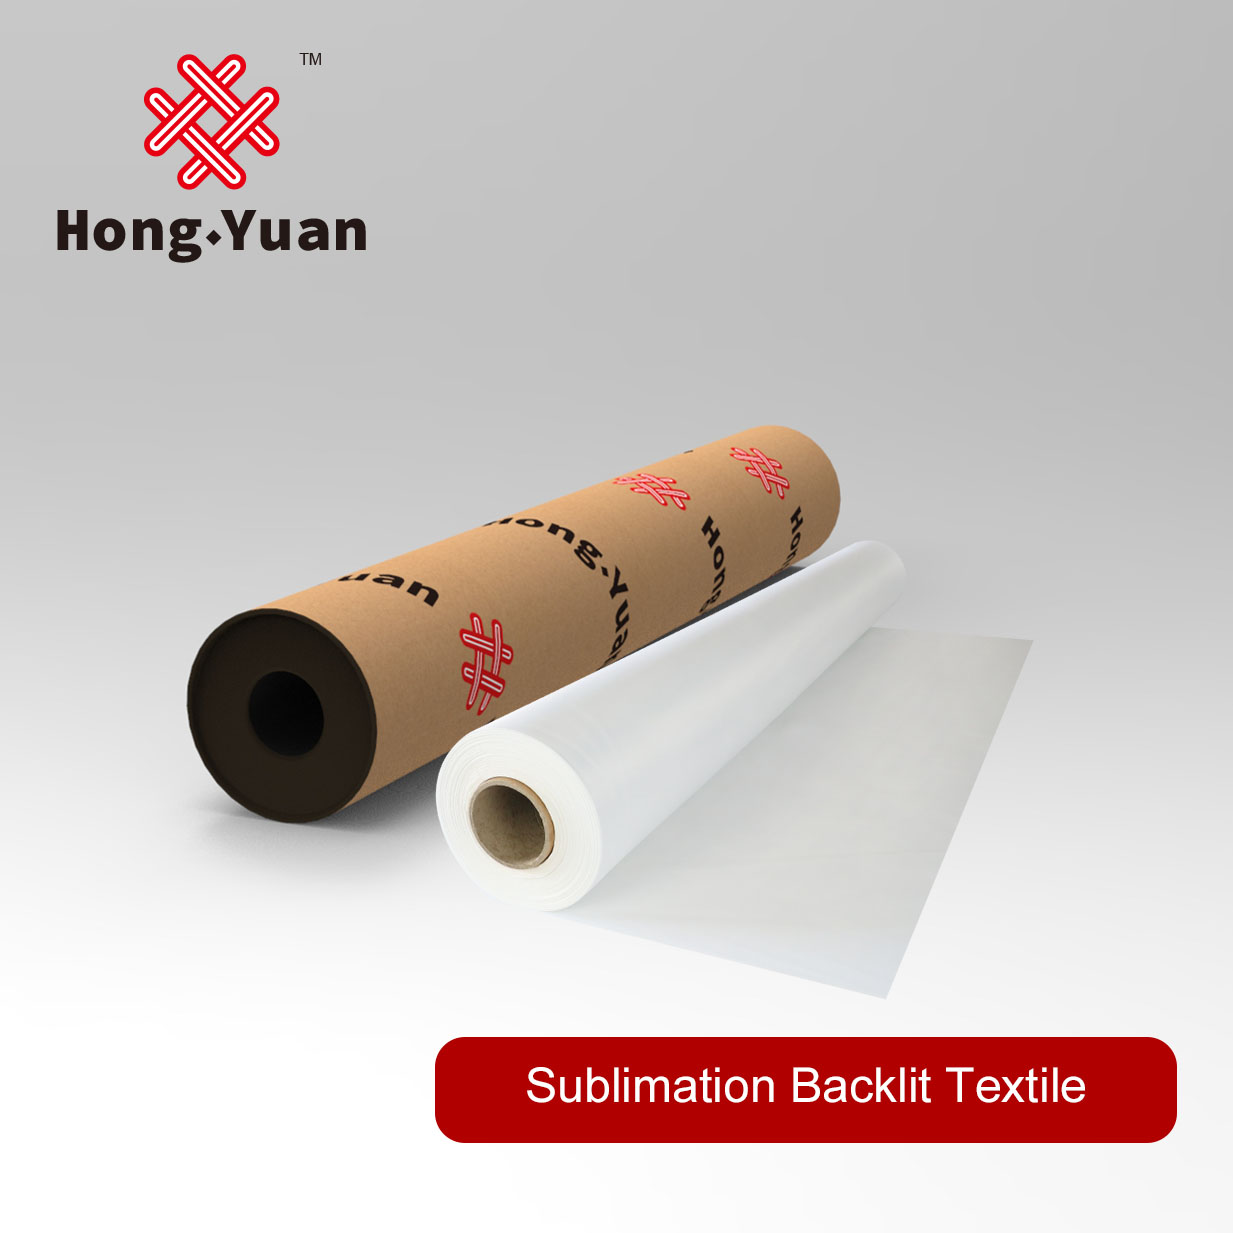 Sublimation Backlit Textile SBL100